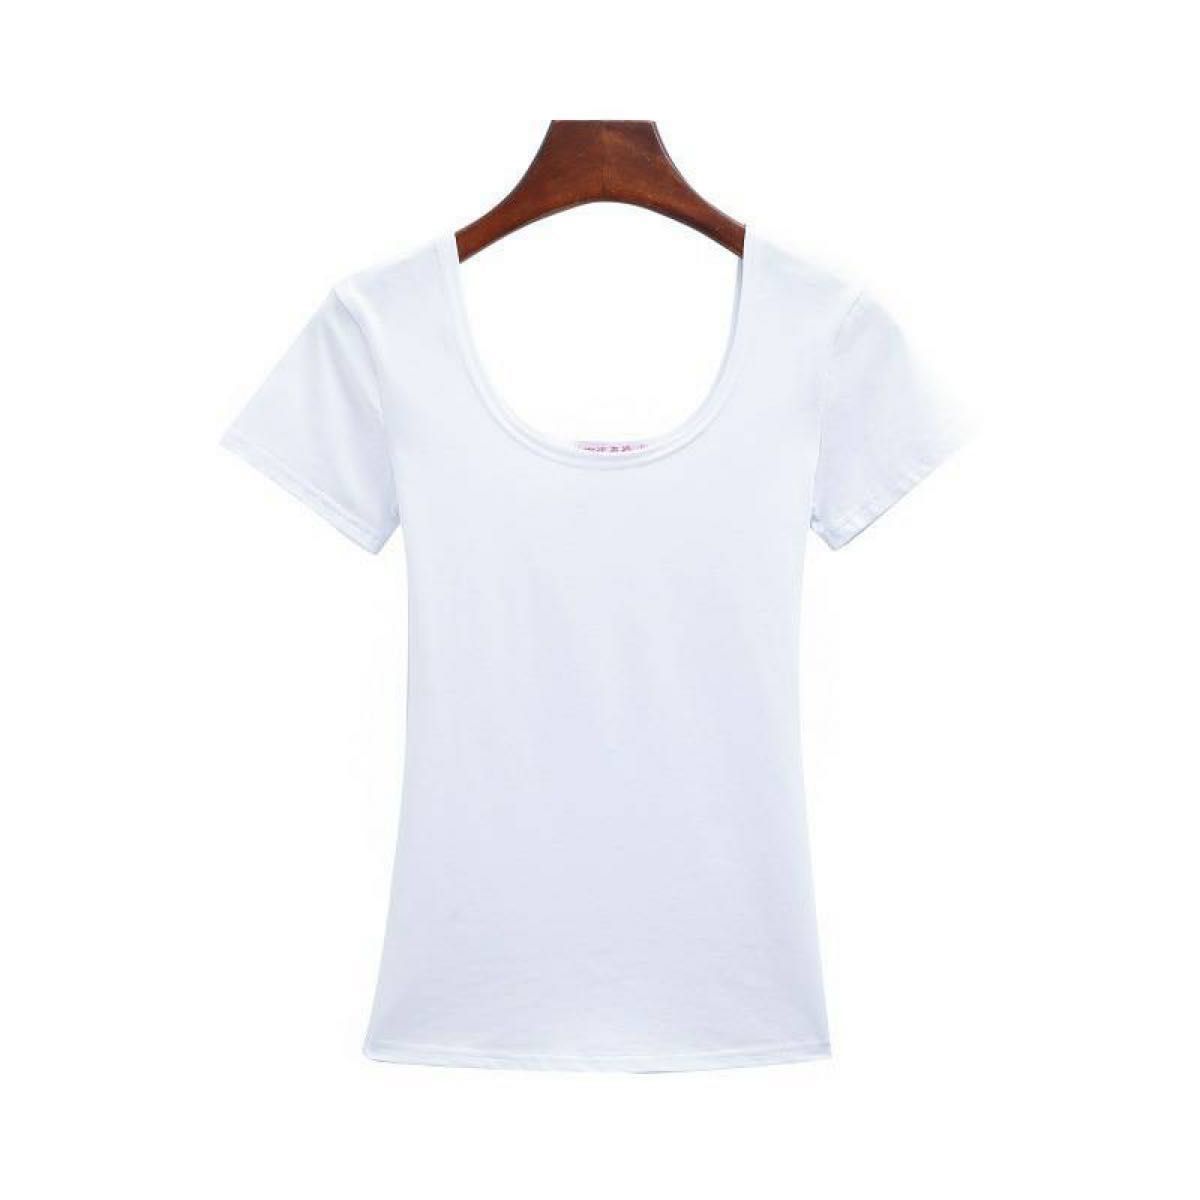 レディース Uネック 半袖 Tシャツ きれいめ シンプル かわいい 細身 スリムフィット ホワイト Lサイズ